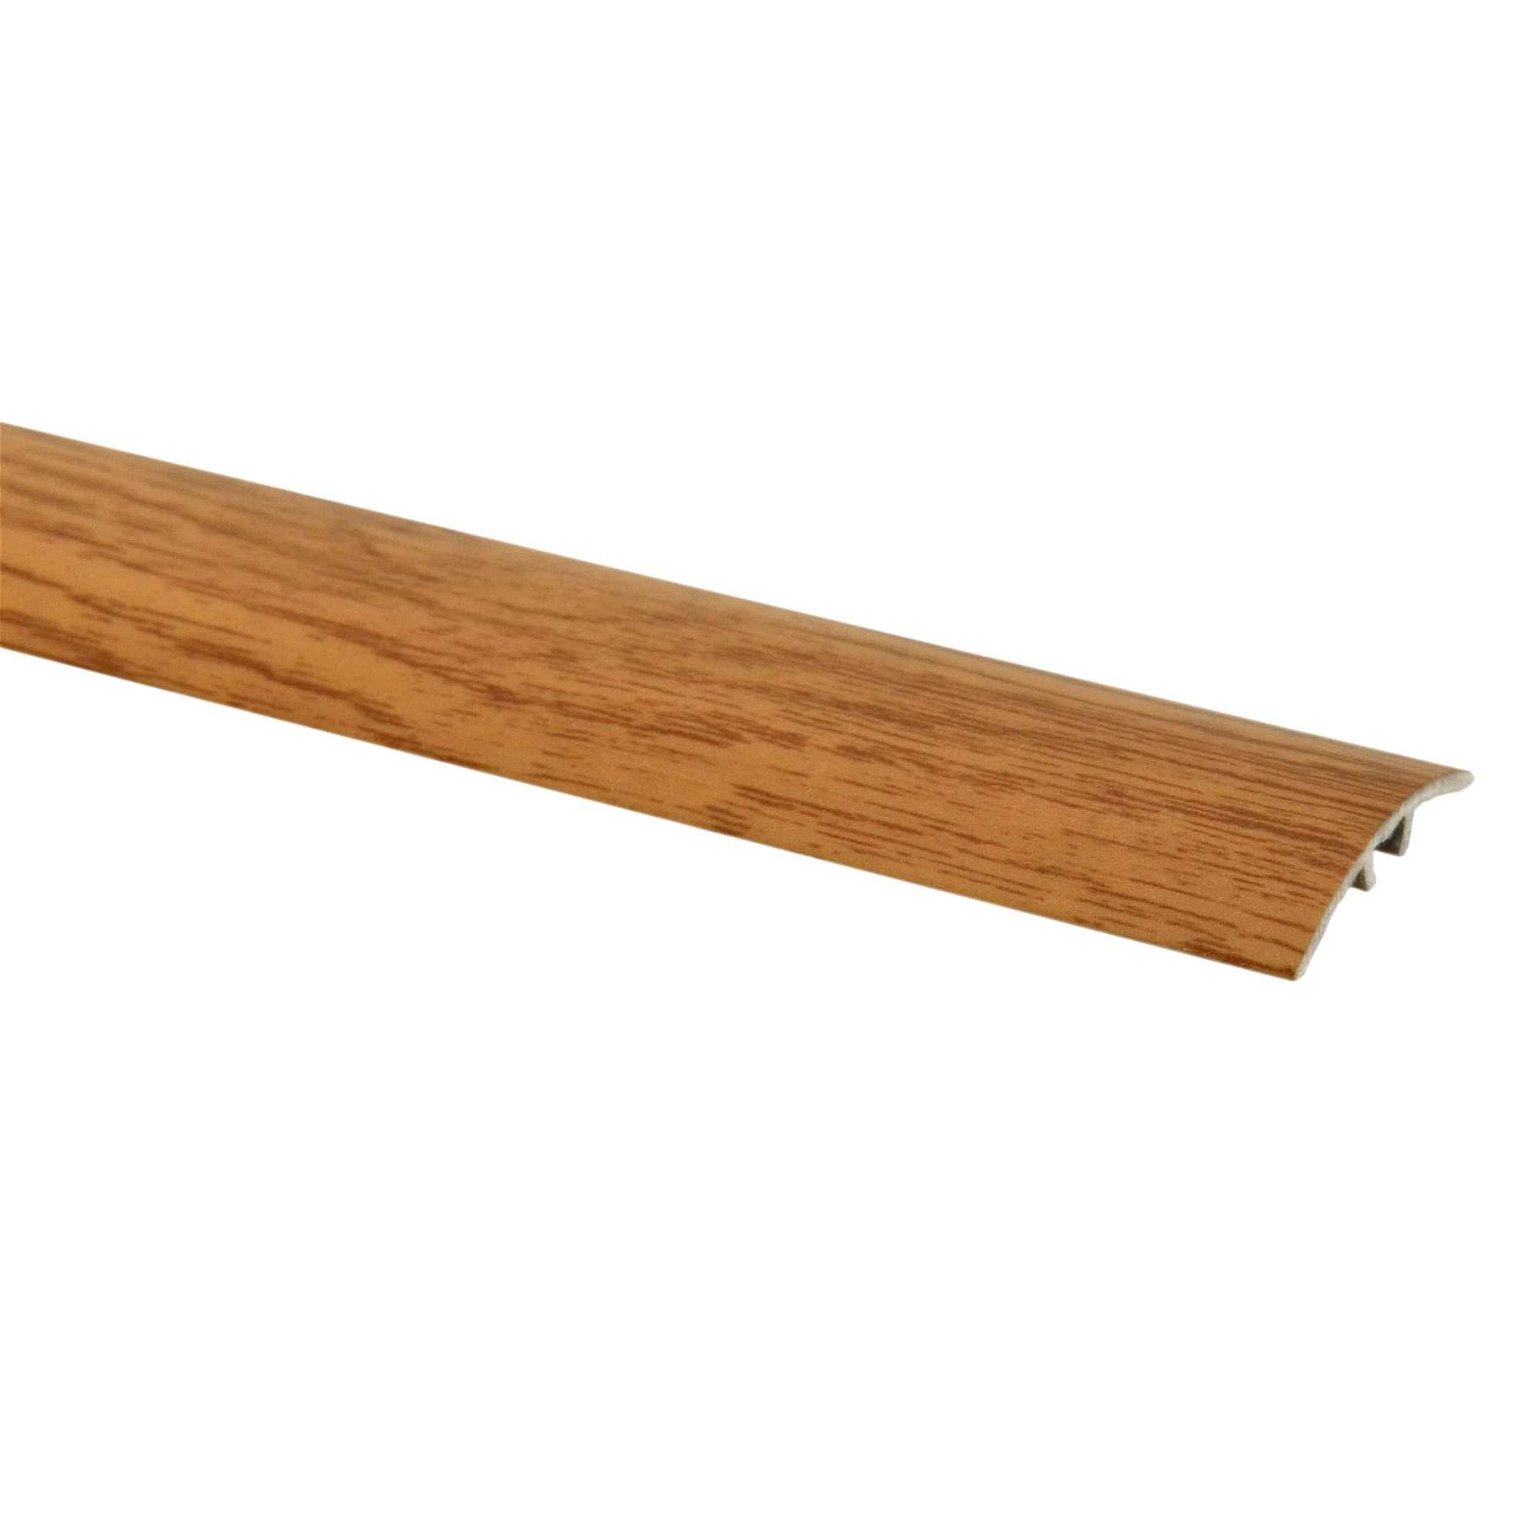 Aliumininė grindų juostelė SM1 W5, kilniojo ąžuolo sp., 30 mm pločio, 93 cm ilgio